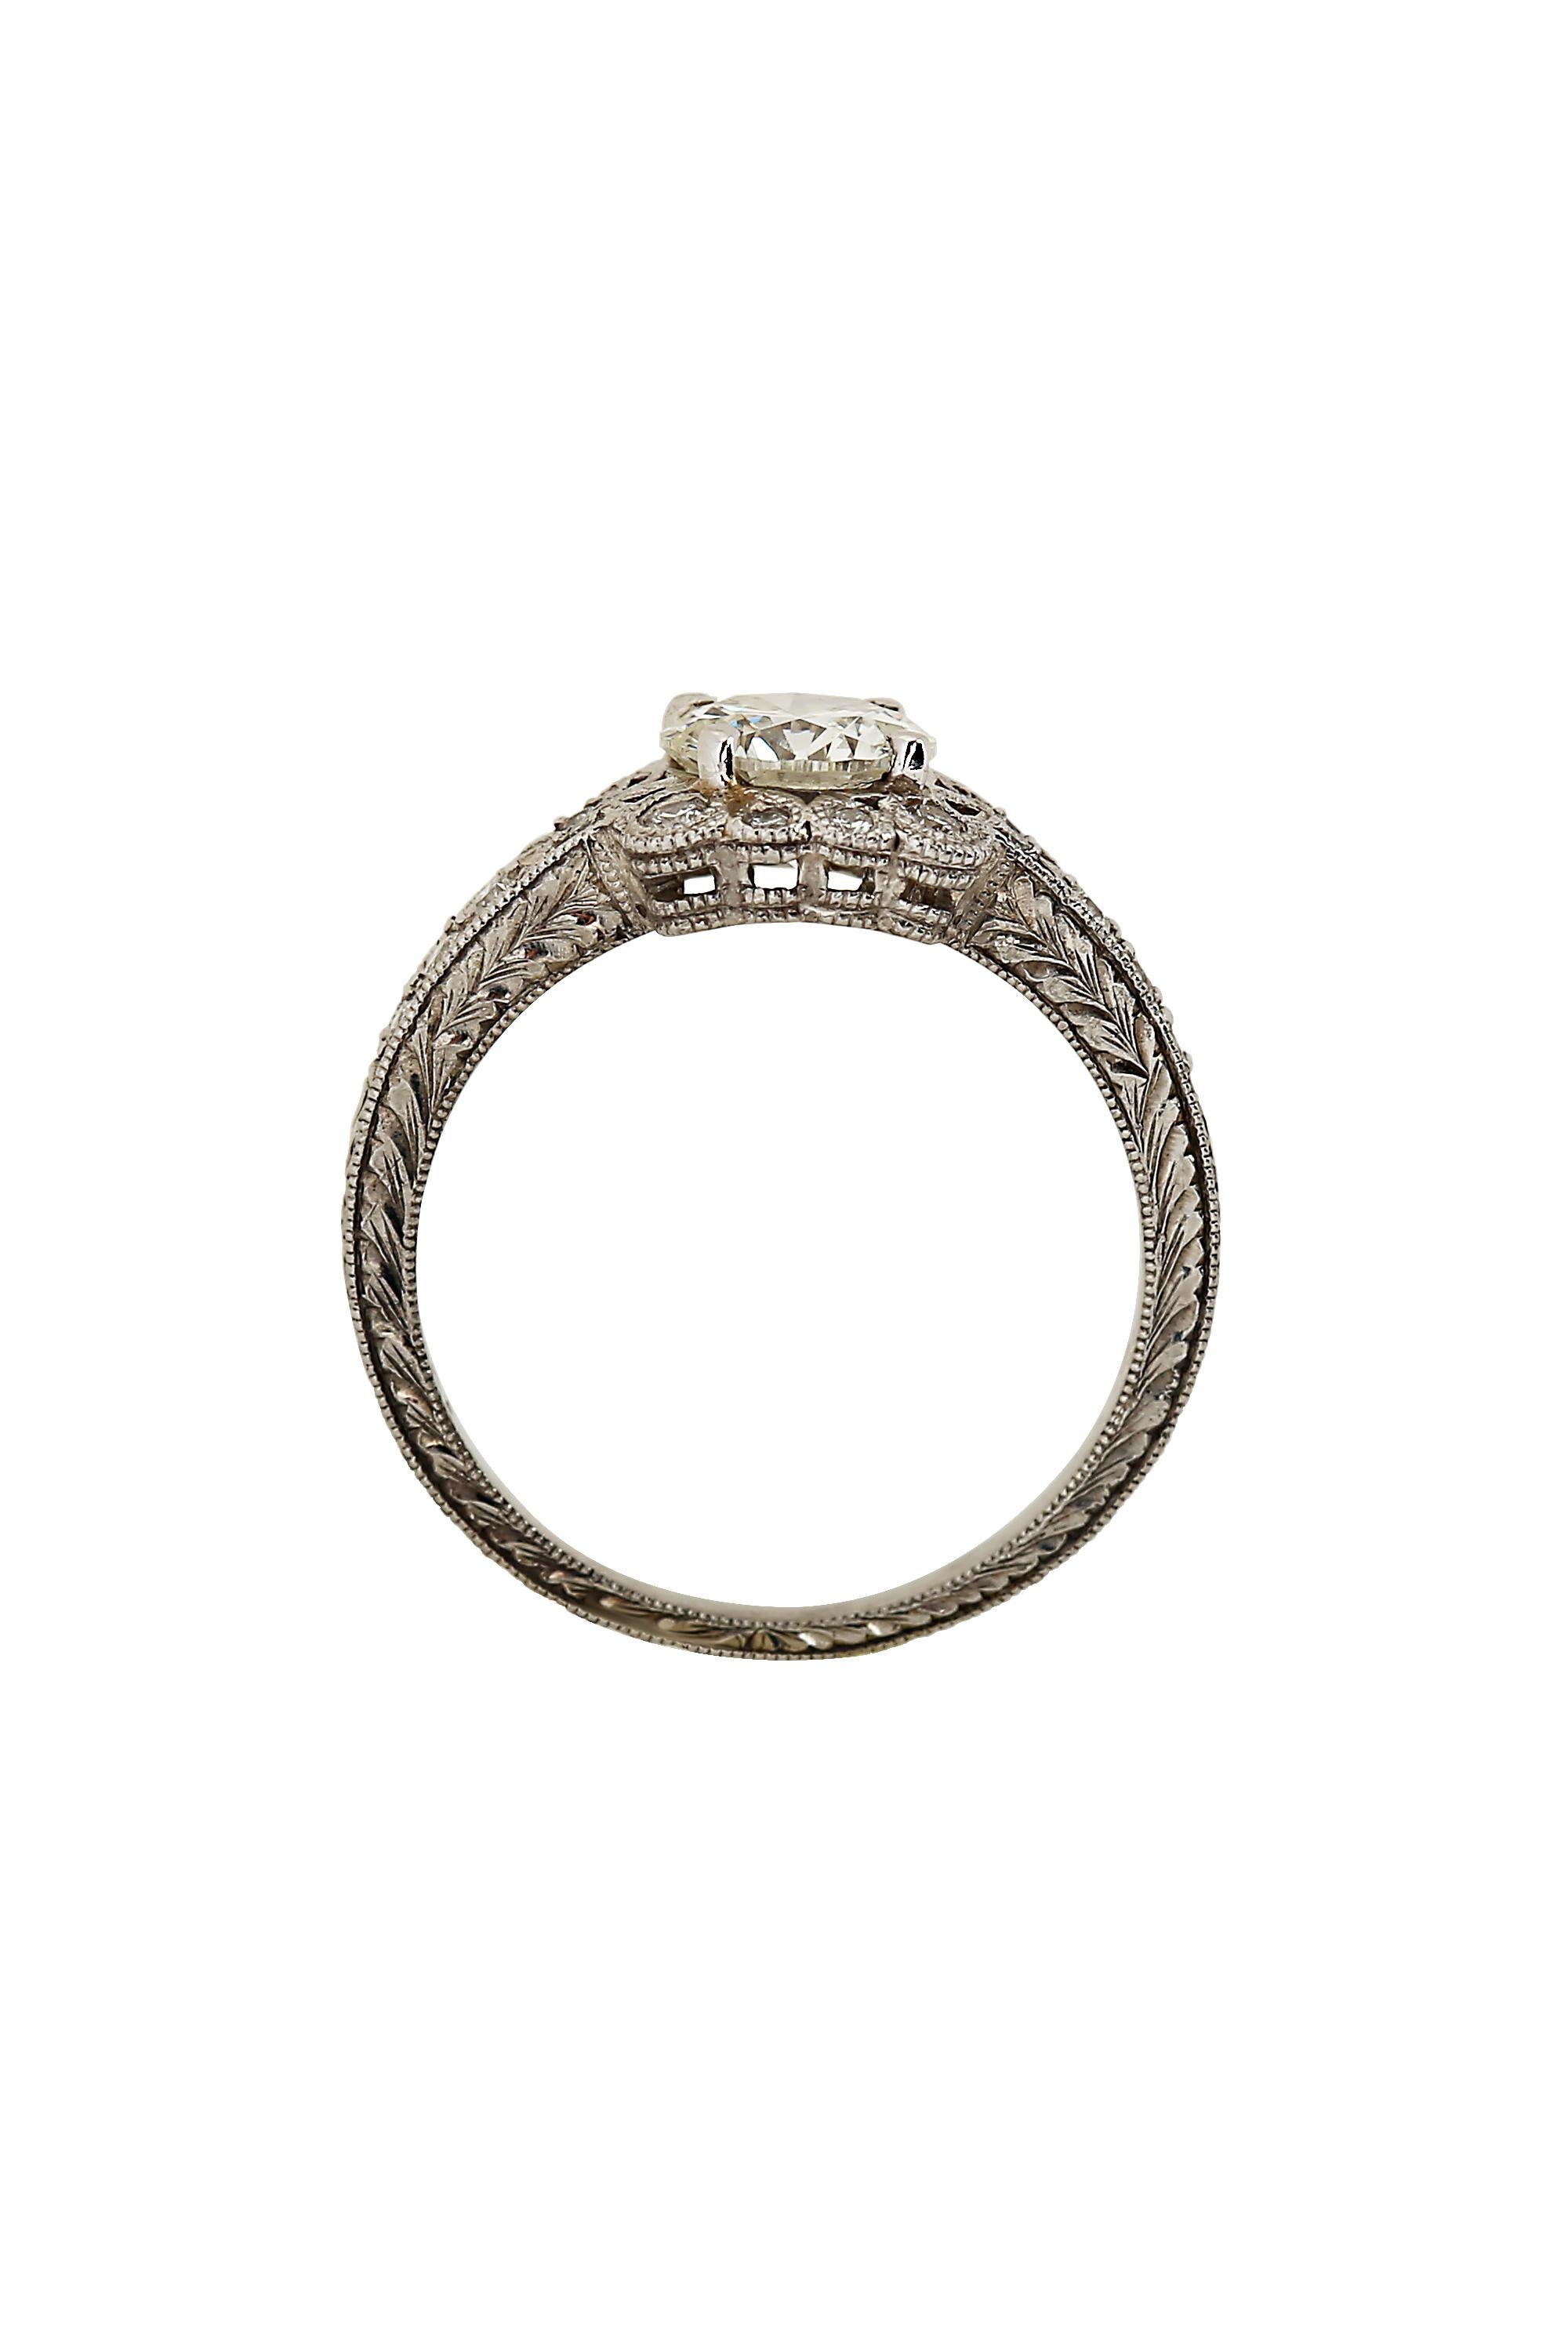 Round Cut Art Deco 1.10 Carat Diamond Platinum Ring For Sale